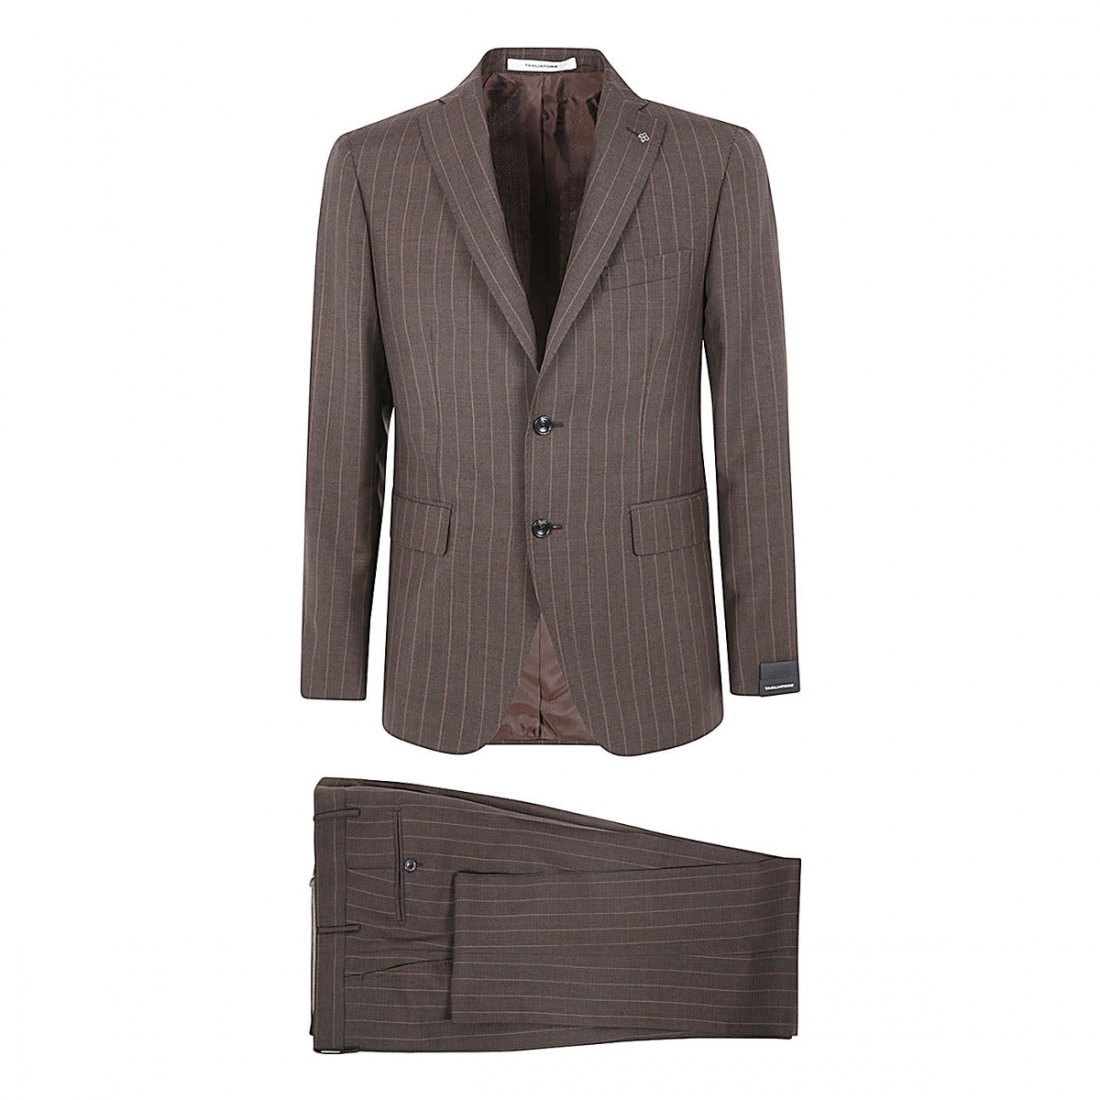 'Pinstriped' Anzug für Herren